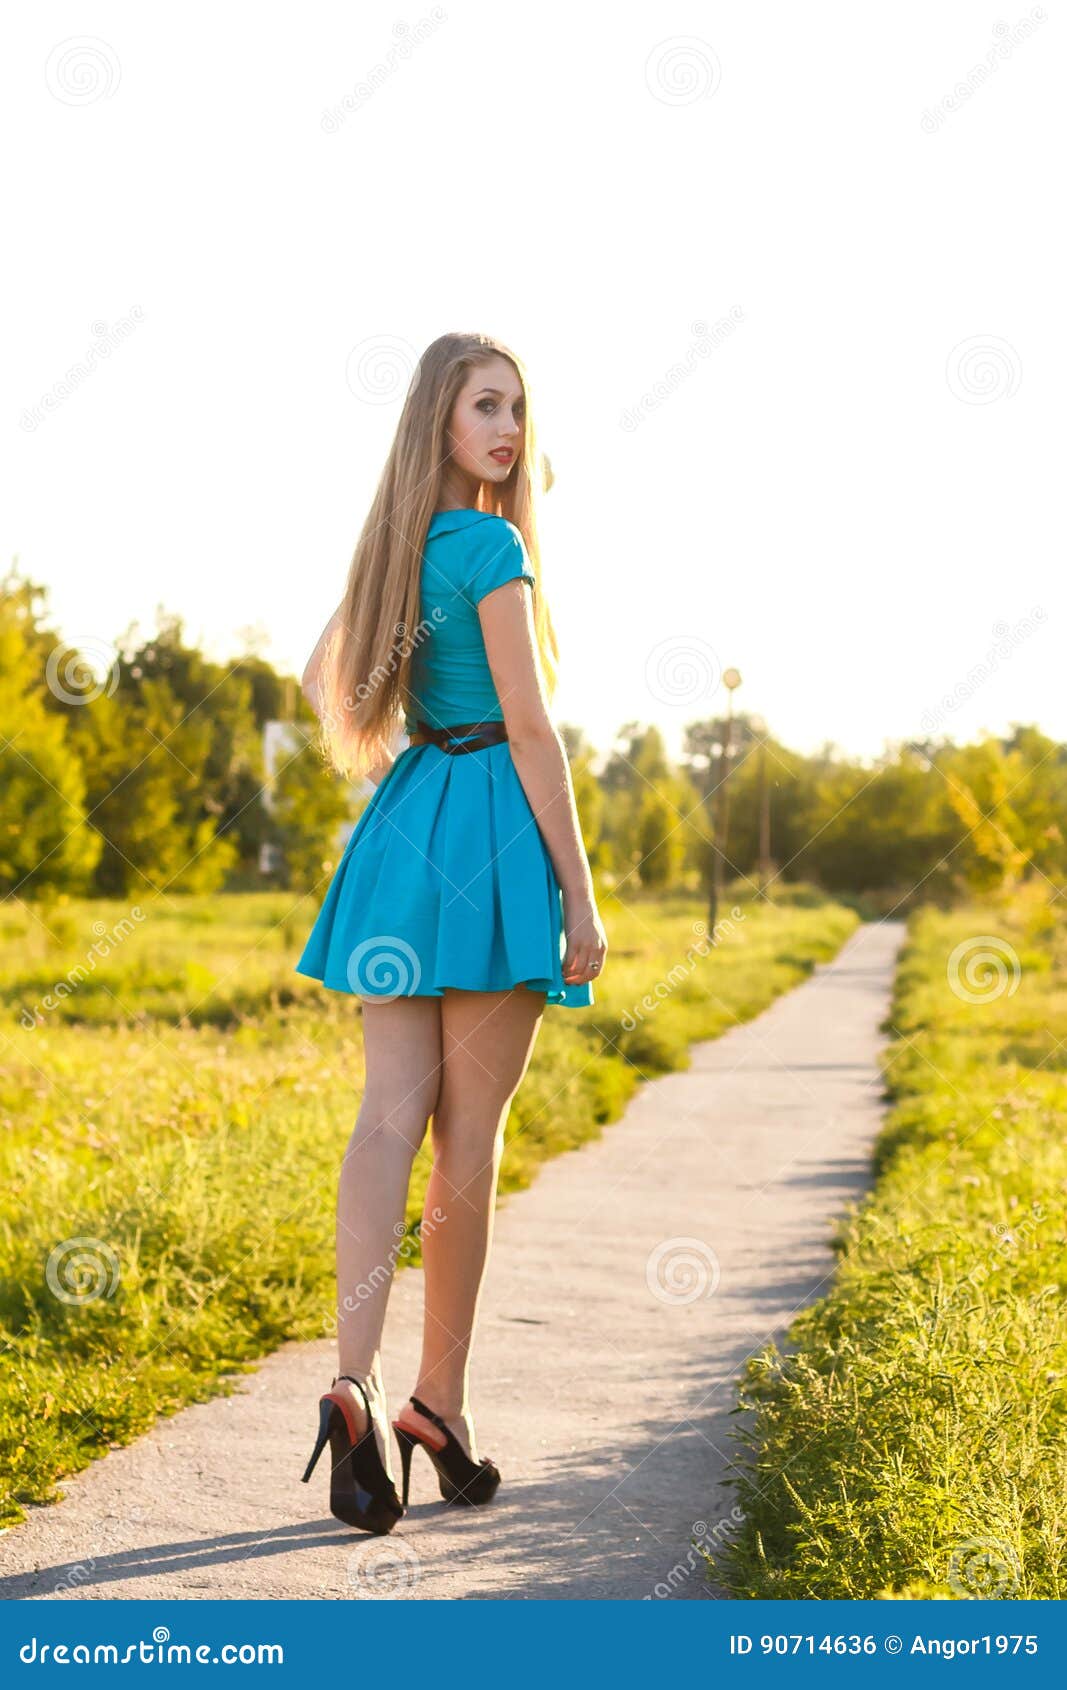 blonde teen blue dress